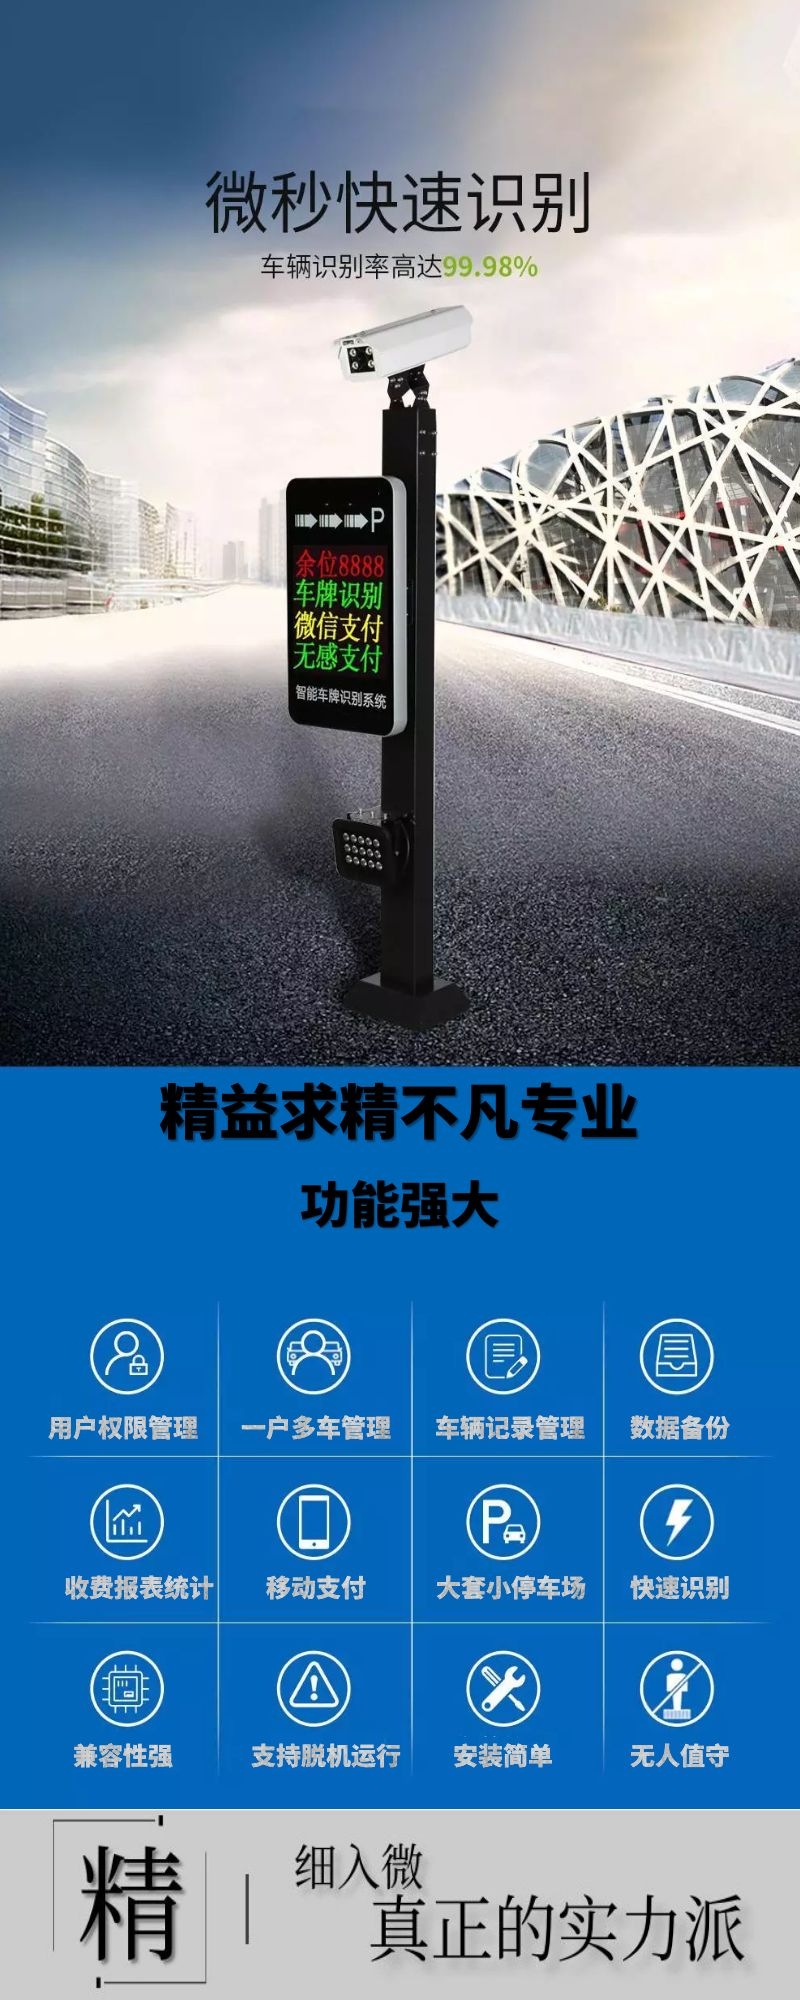 广州市车牌识别系统,广州车牌识别系统